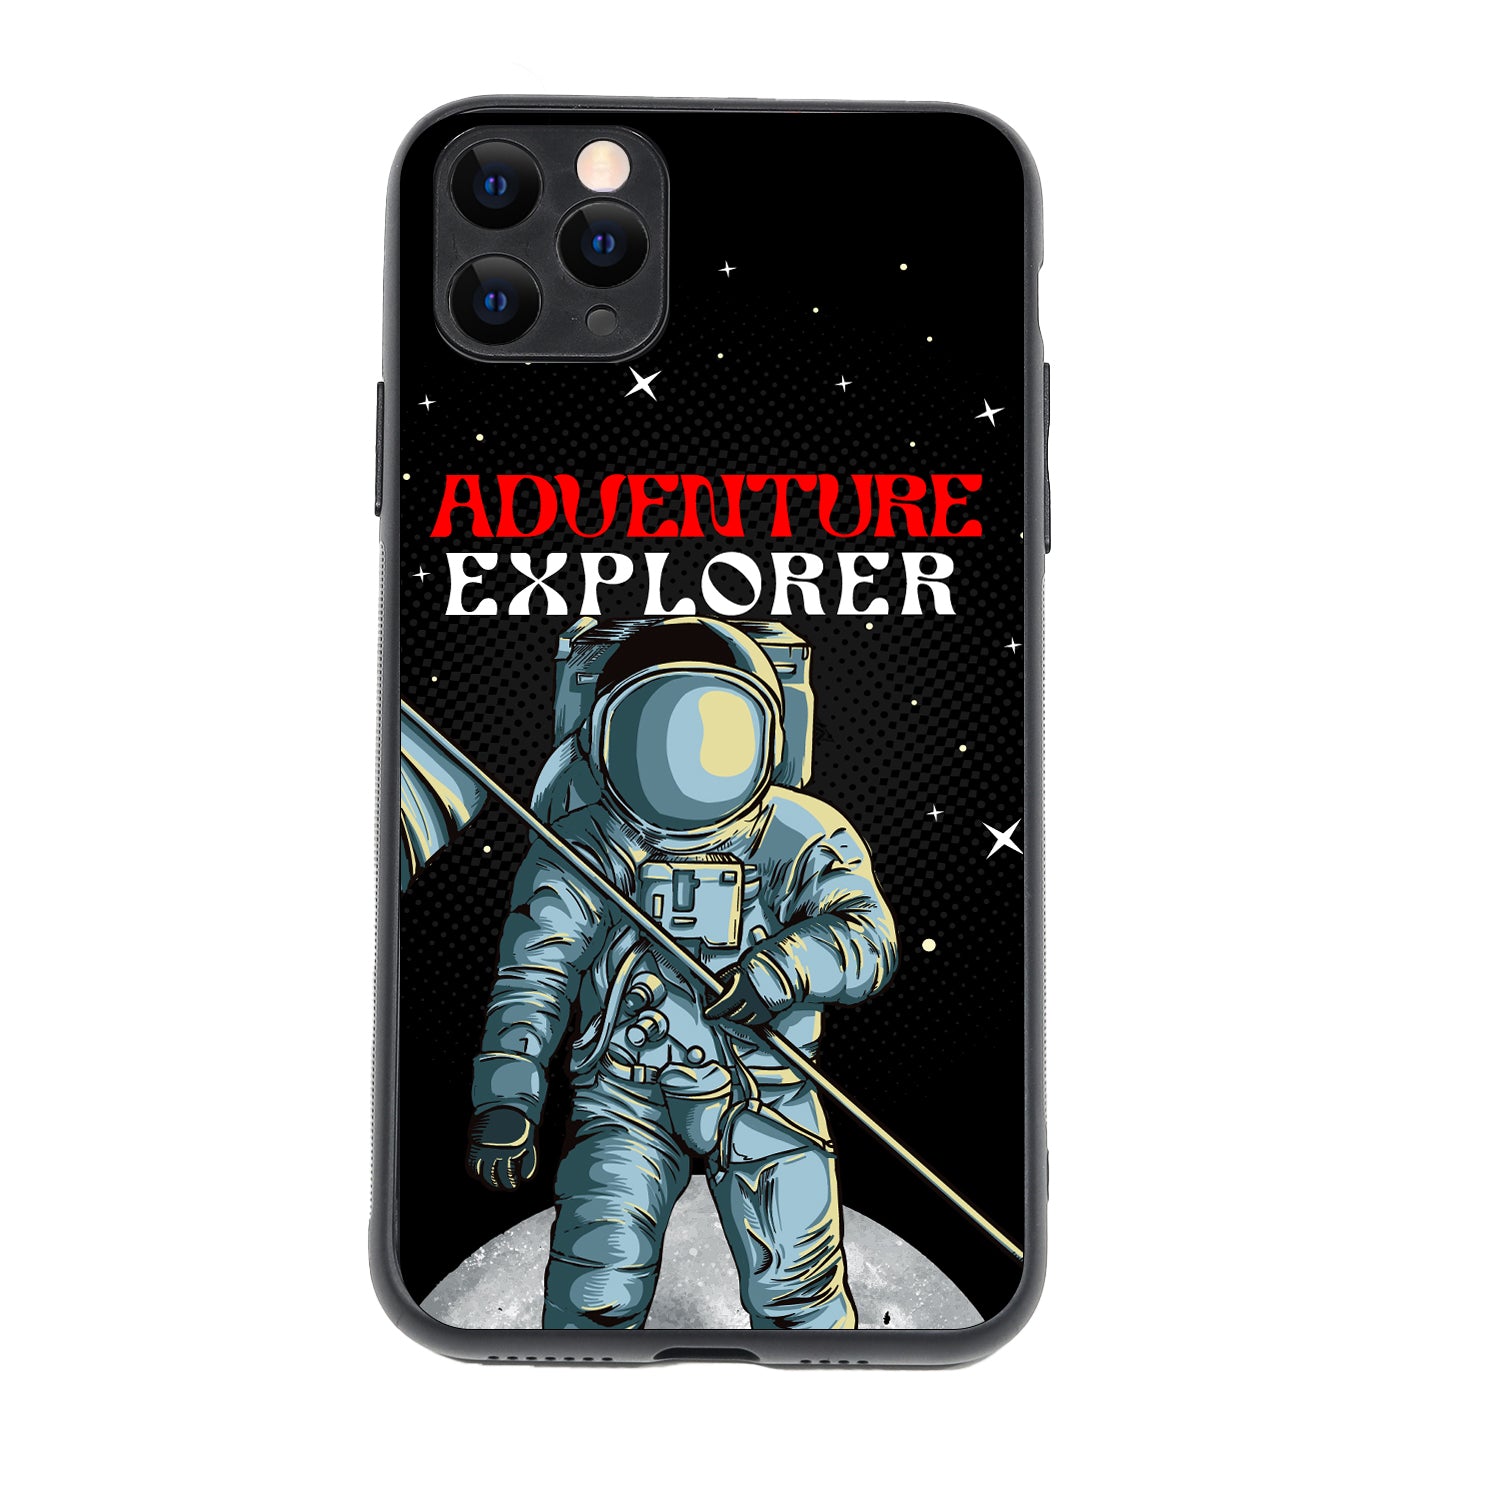 Adventure Explorer Space iPhone 11 Pro Max Case